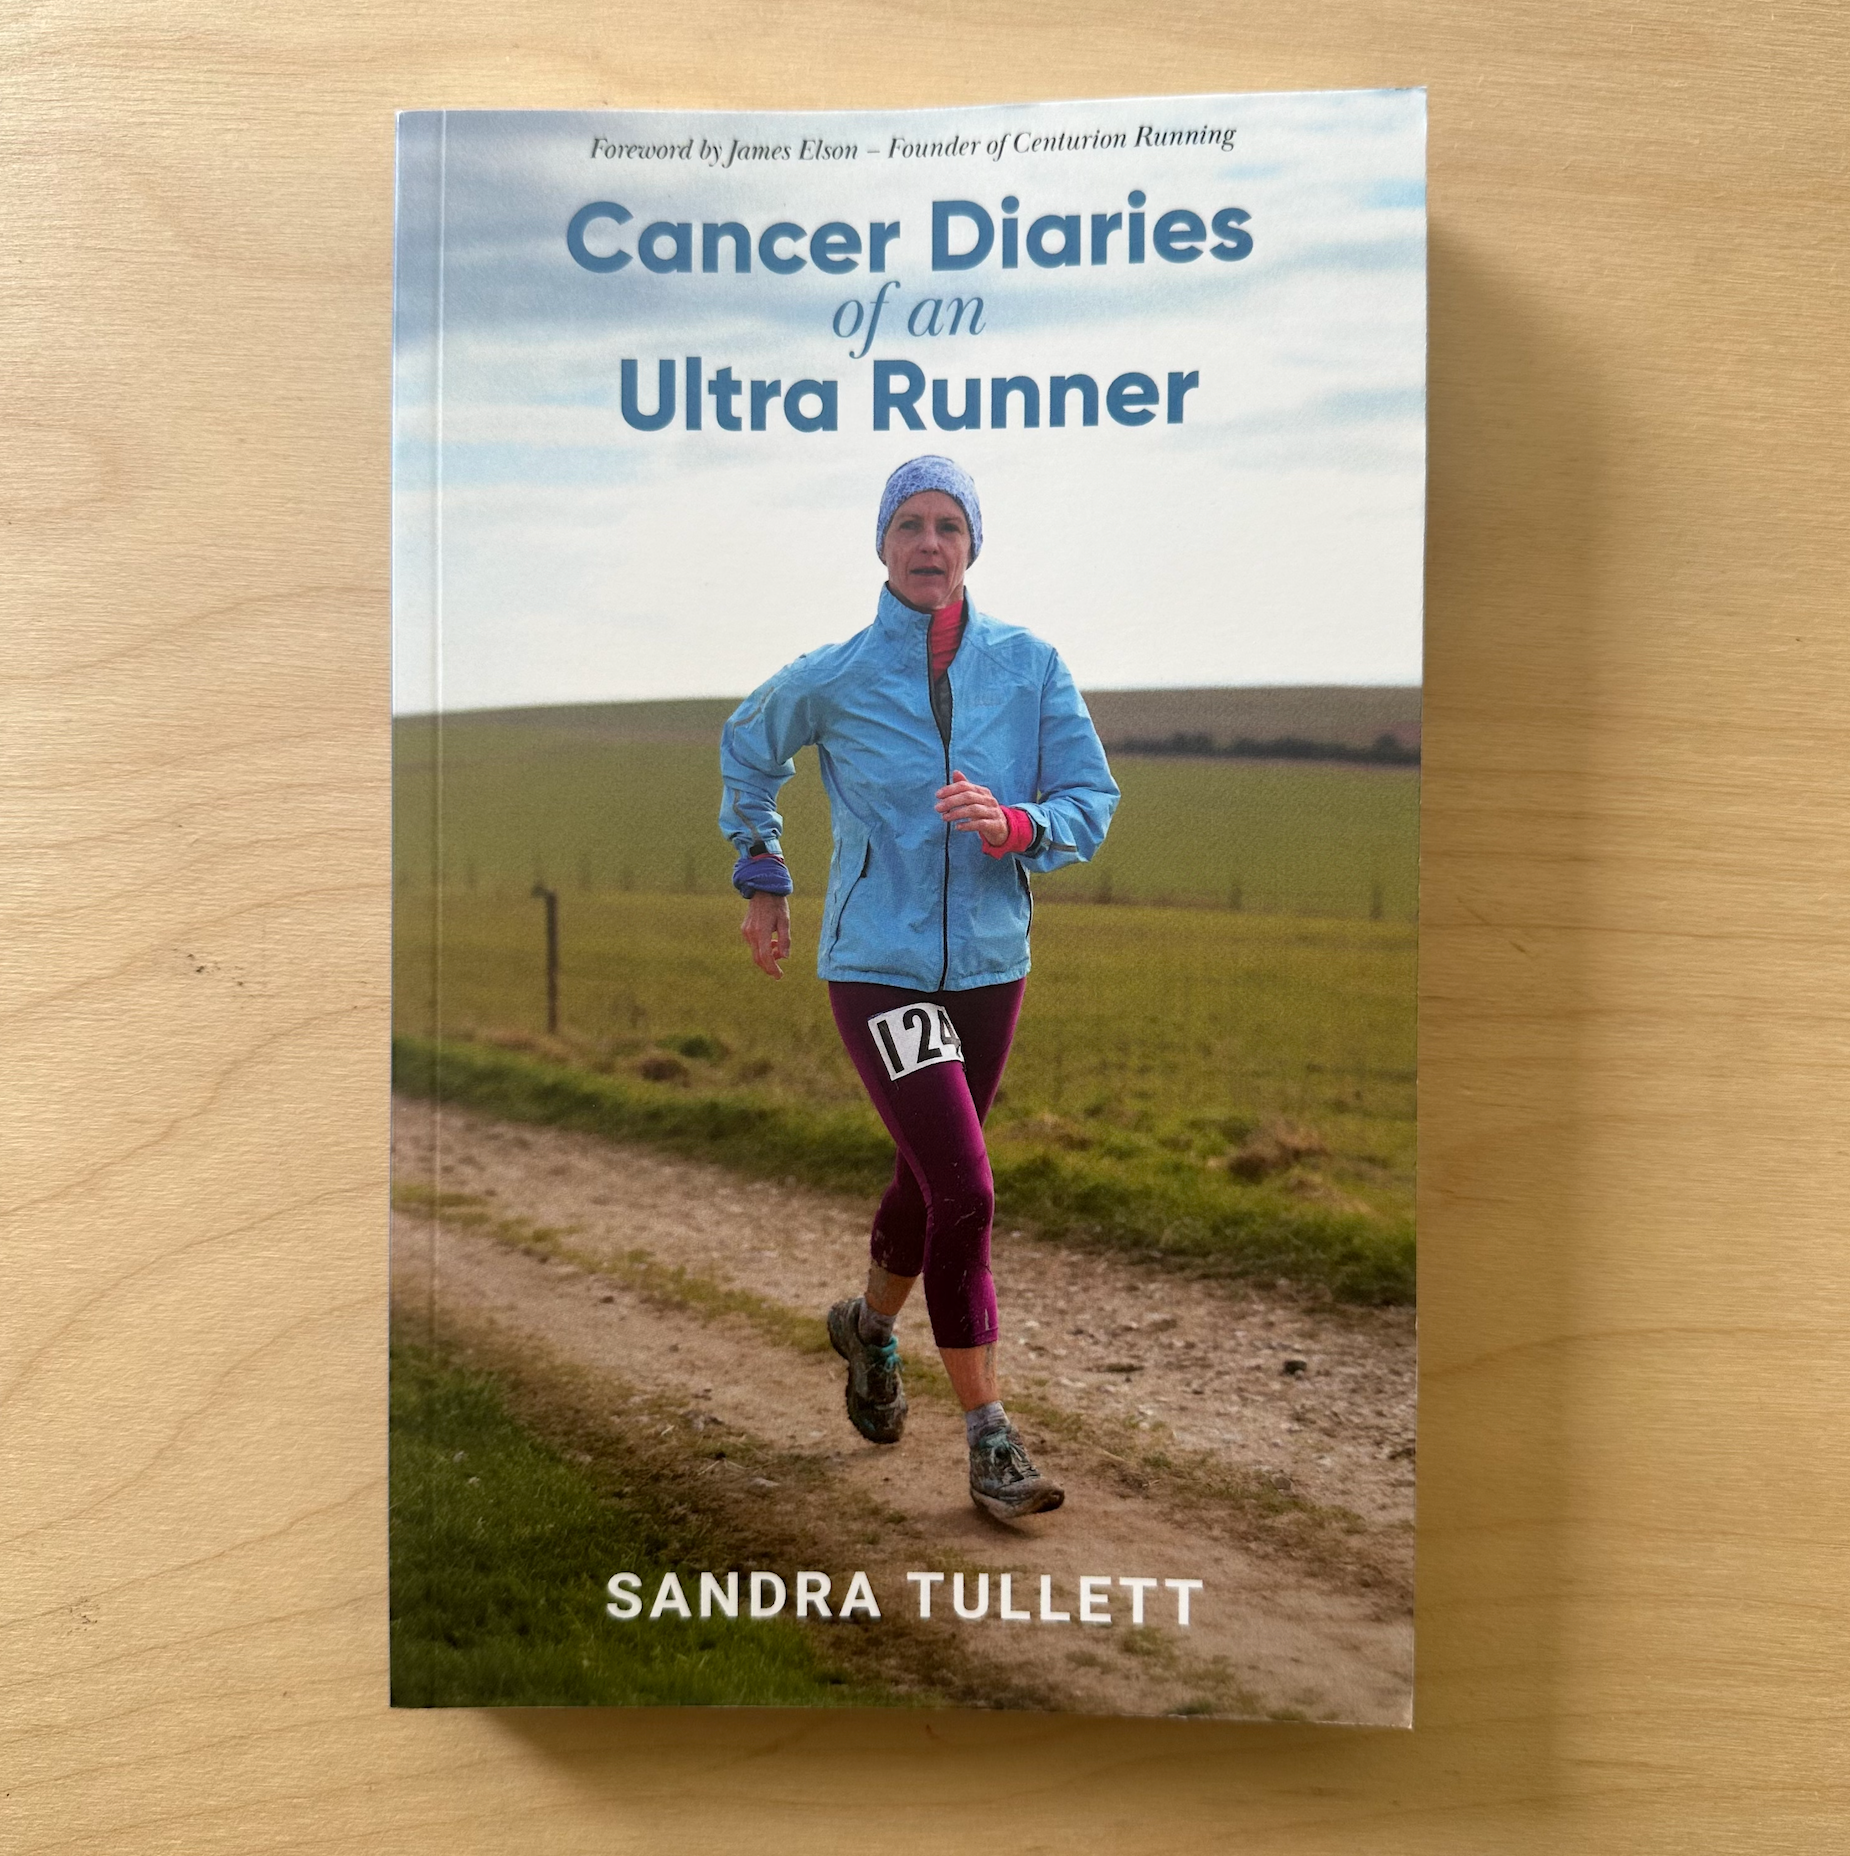 Cancer Diaries of an Ultrarunner: A Book by Sandra Tullett